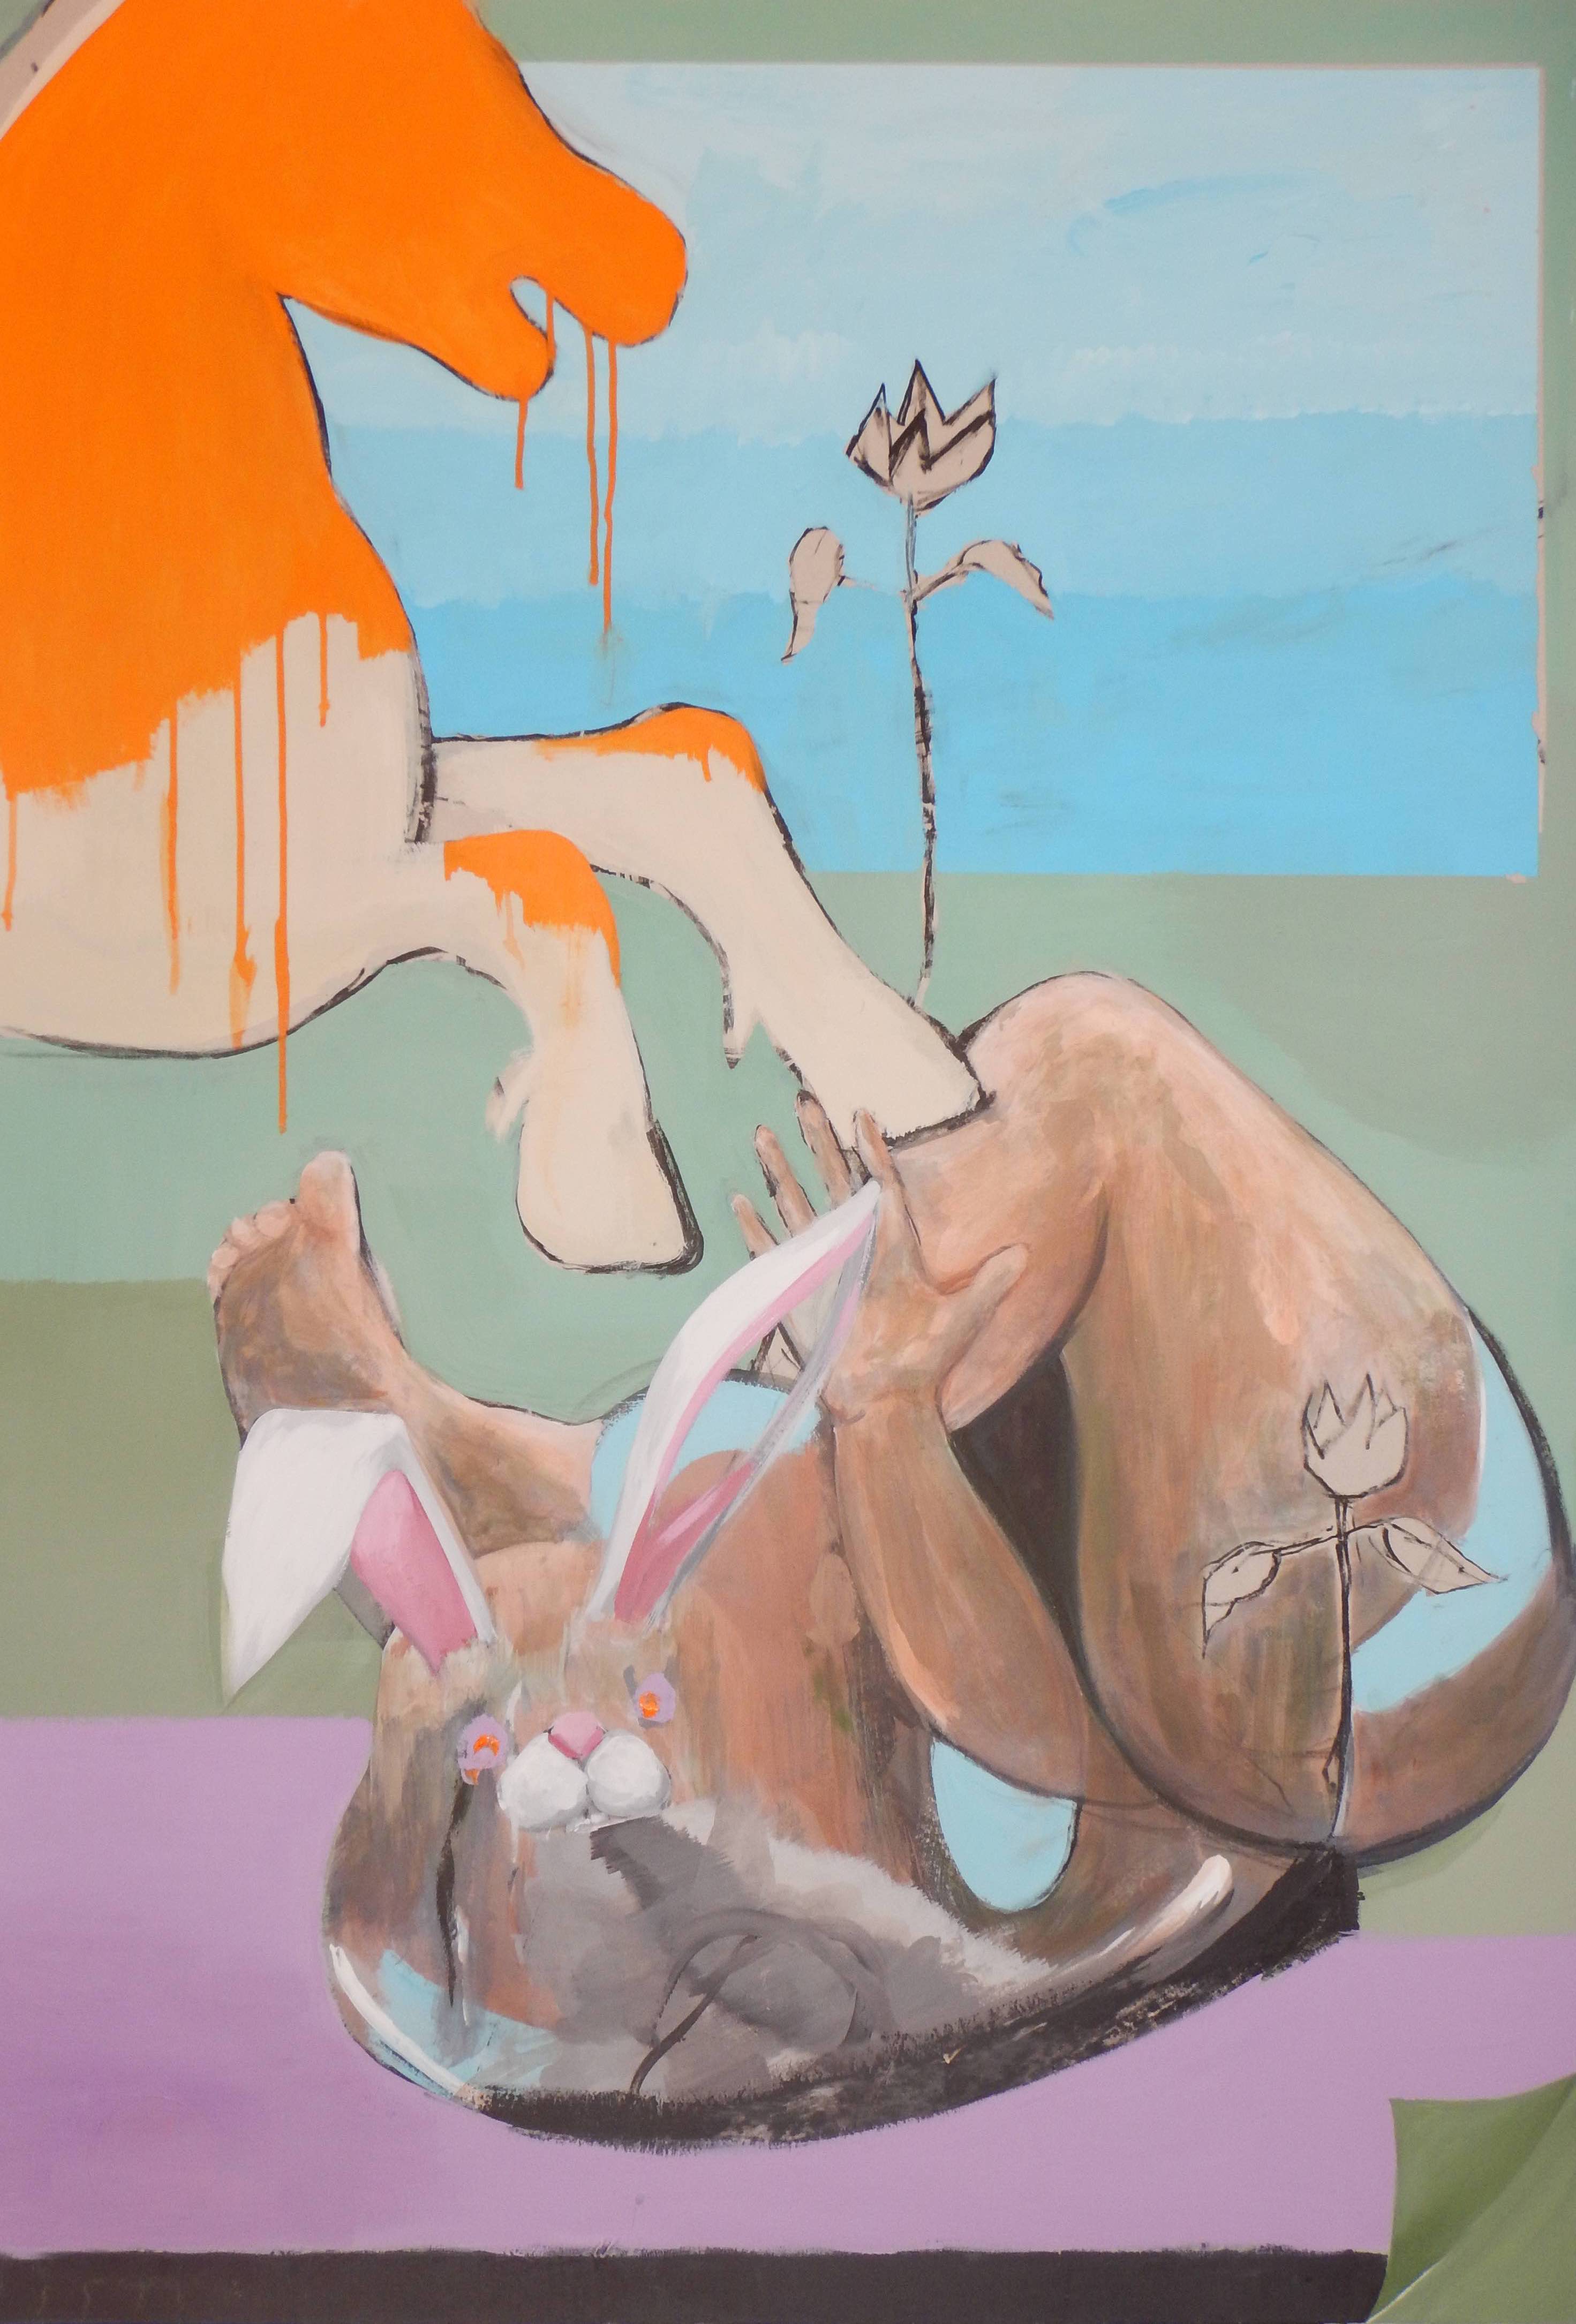 Luis Aduna, Snap, 130 x 90 cm, acrílico sobre cartón, 2019. Cortesía del artista